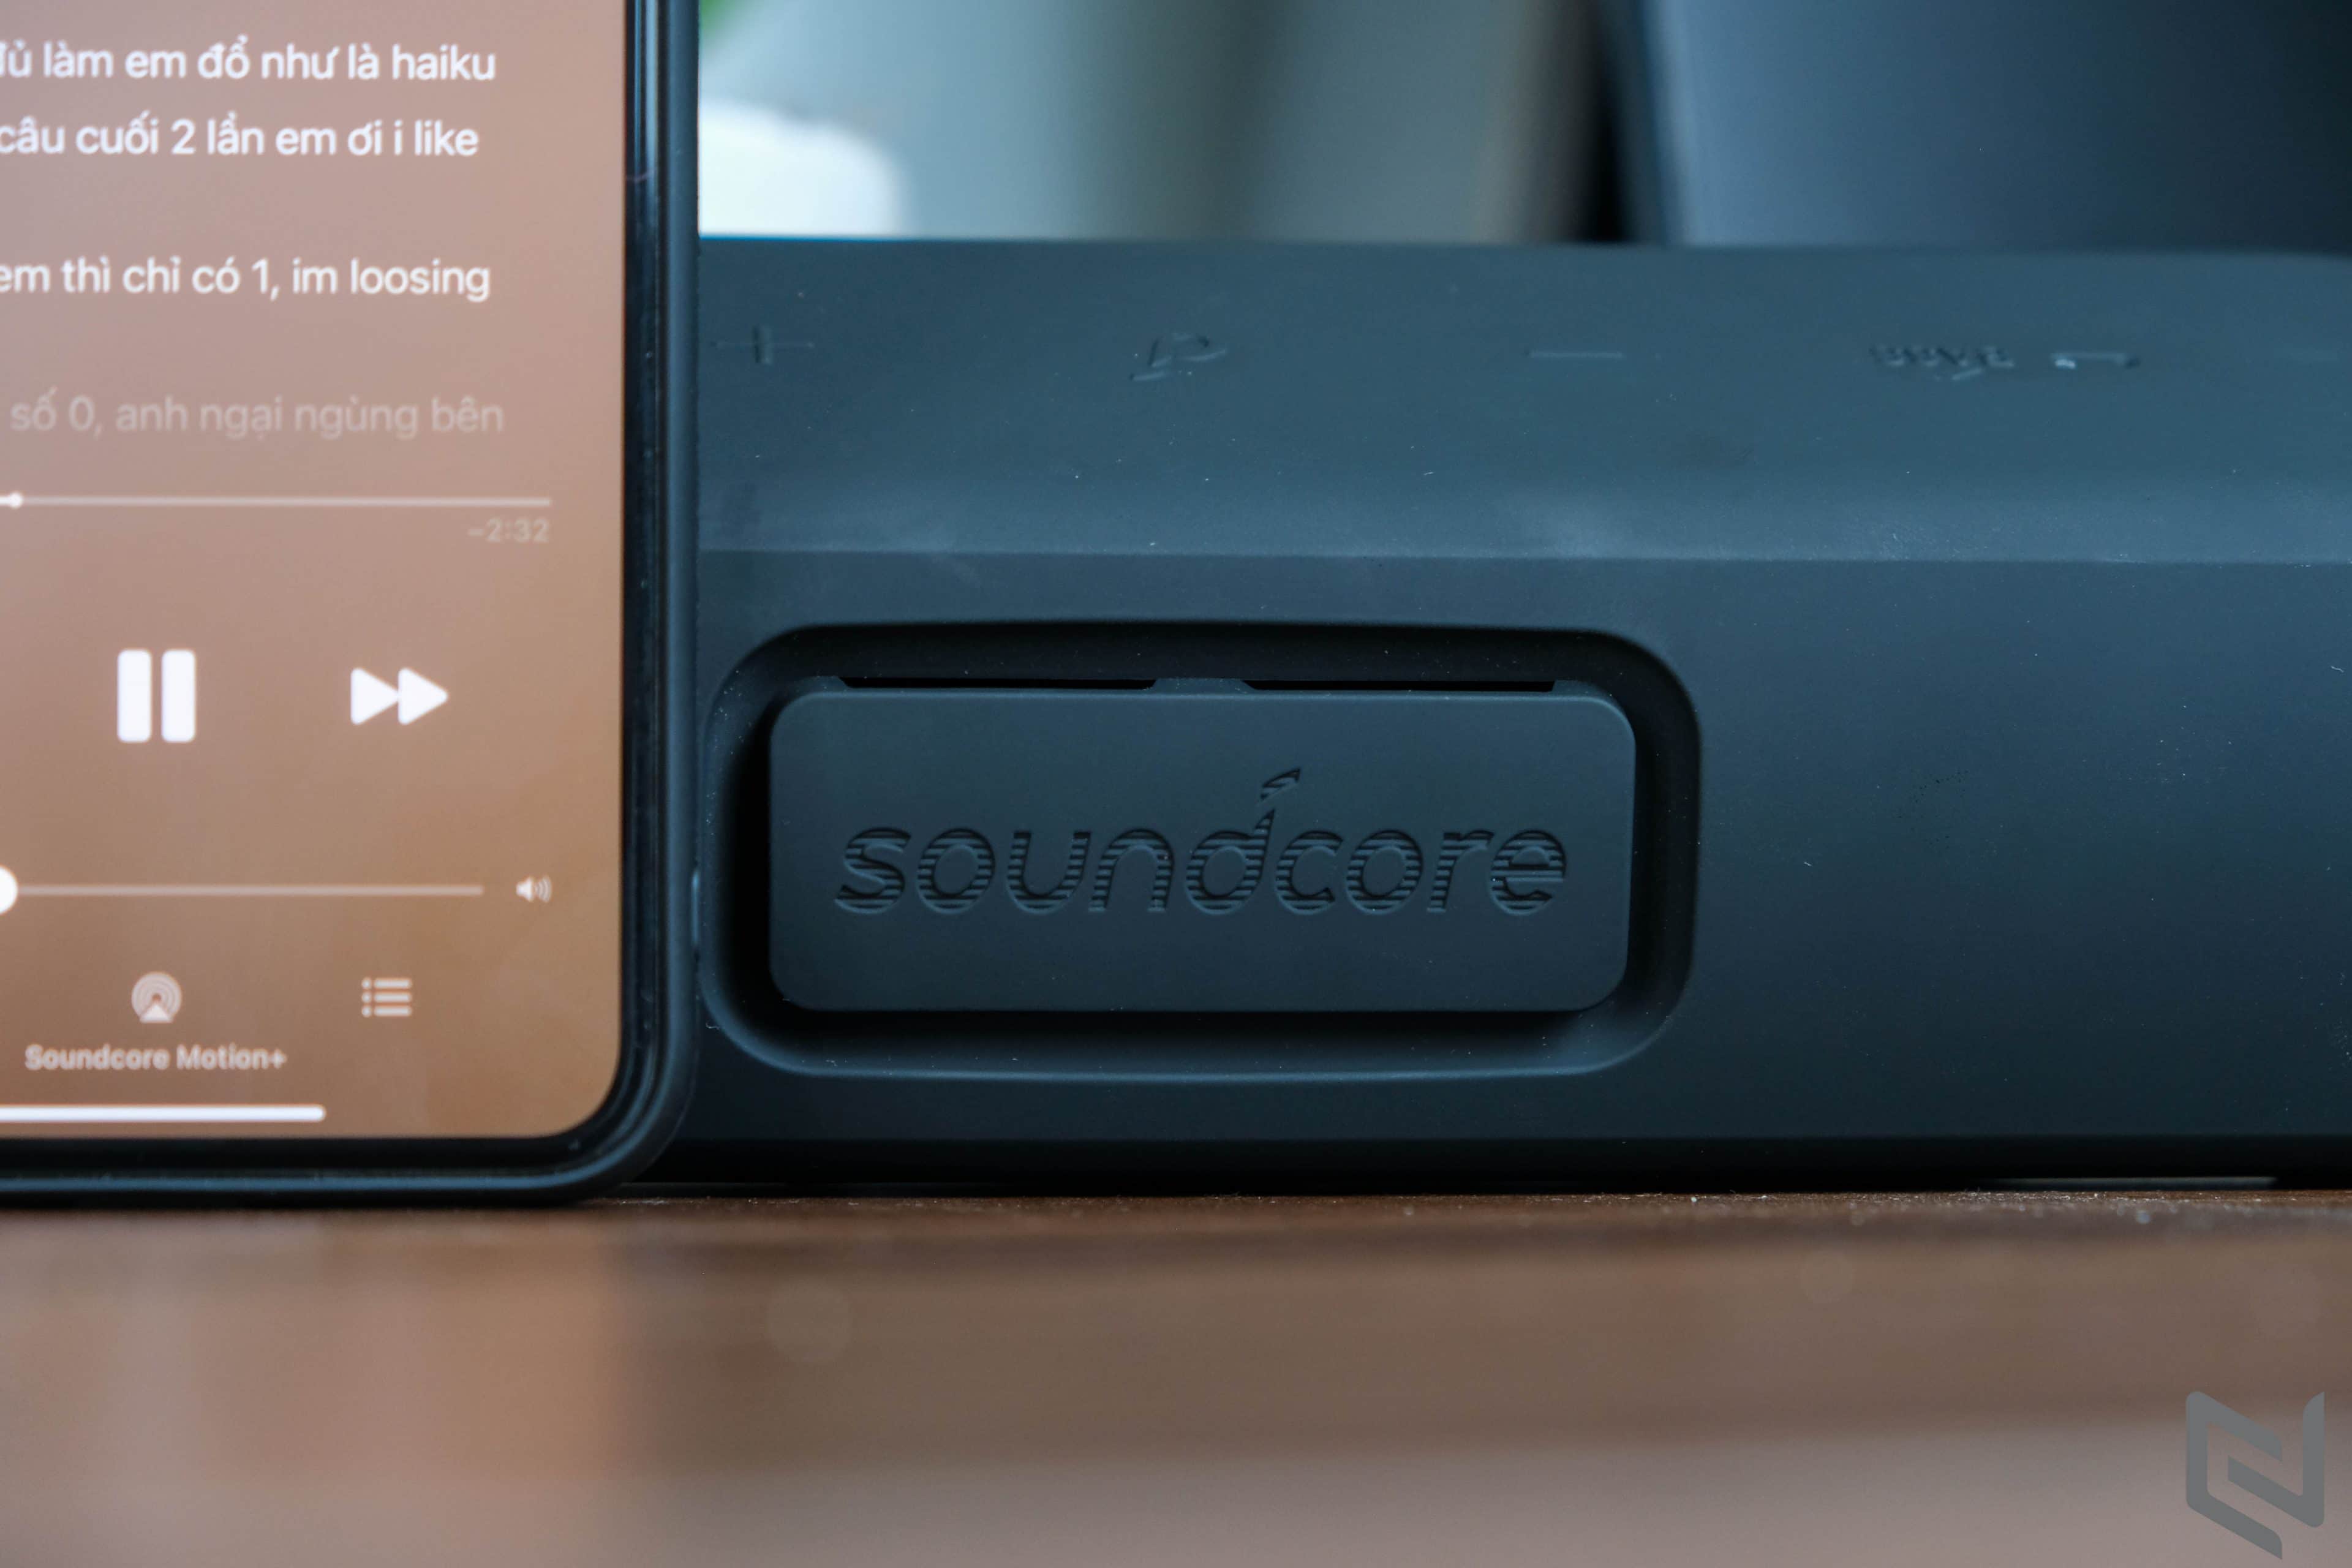 Trên tay Loa Bluetooth Soundcore Motion+: Thưởng thức âm nhạc đỉnh cao, theo cách khác biệt